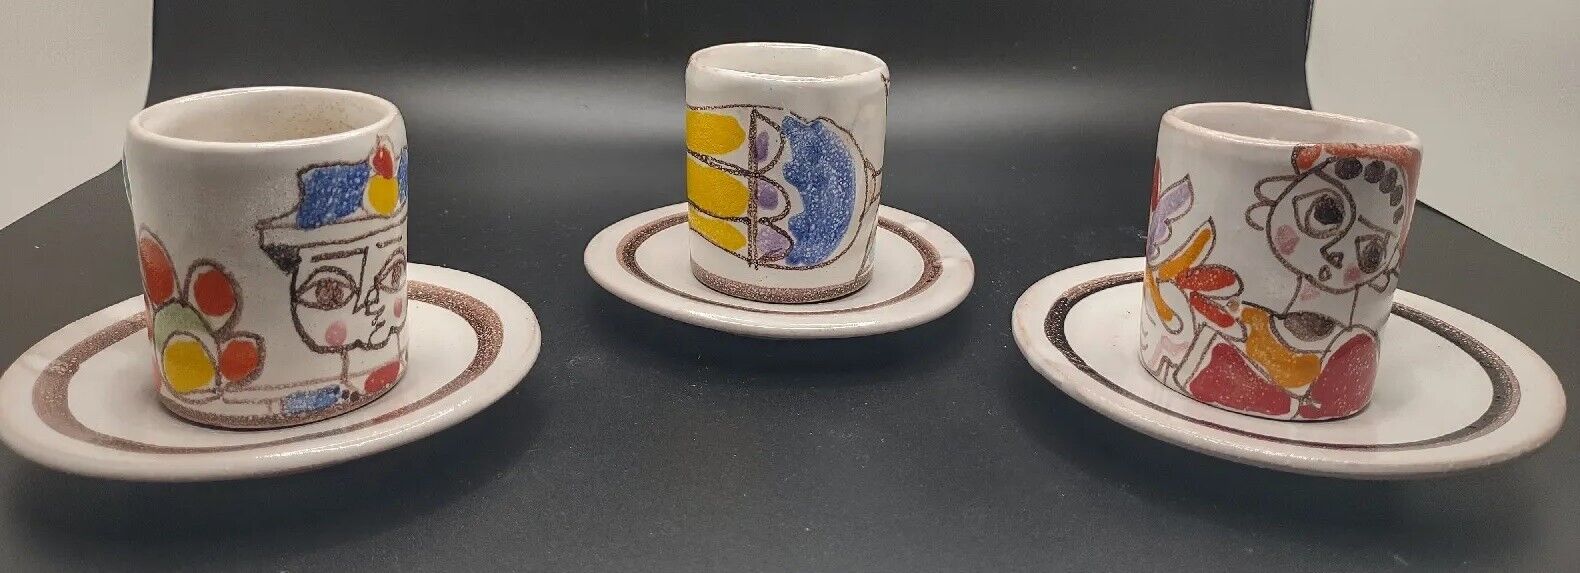 Desimone Picasso Art Pottery Italian Demitasse Espresso Cup & Saucer 1965 Set 3